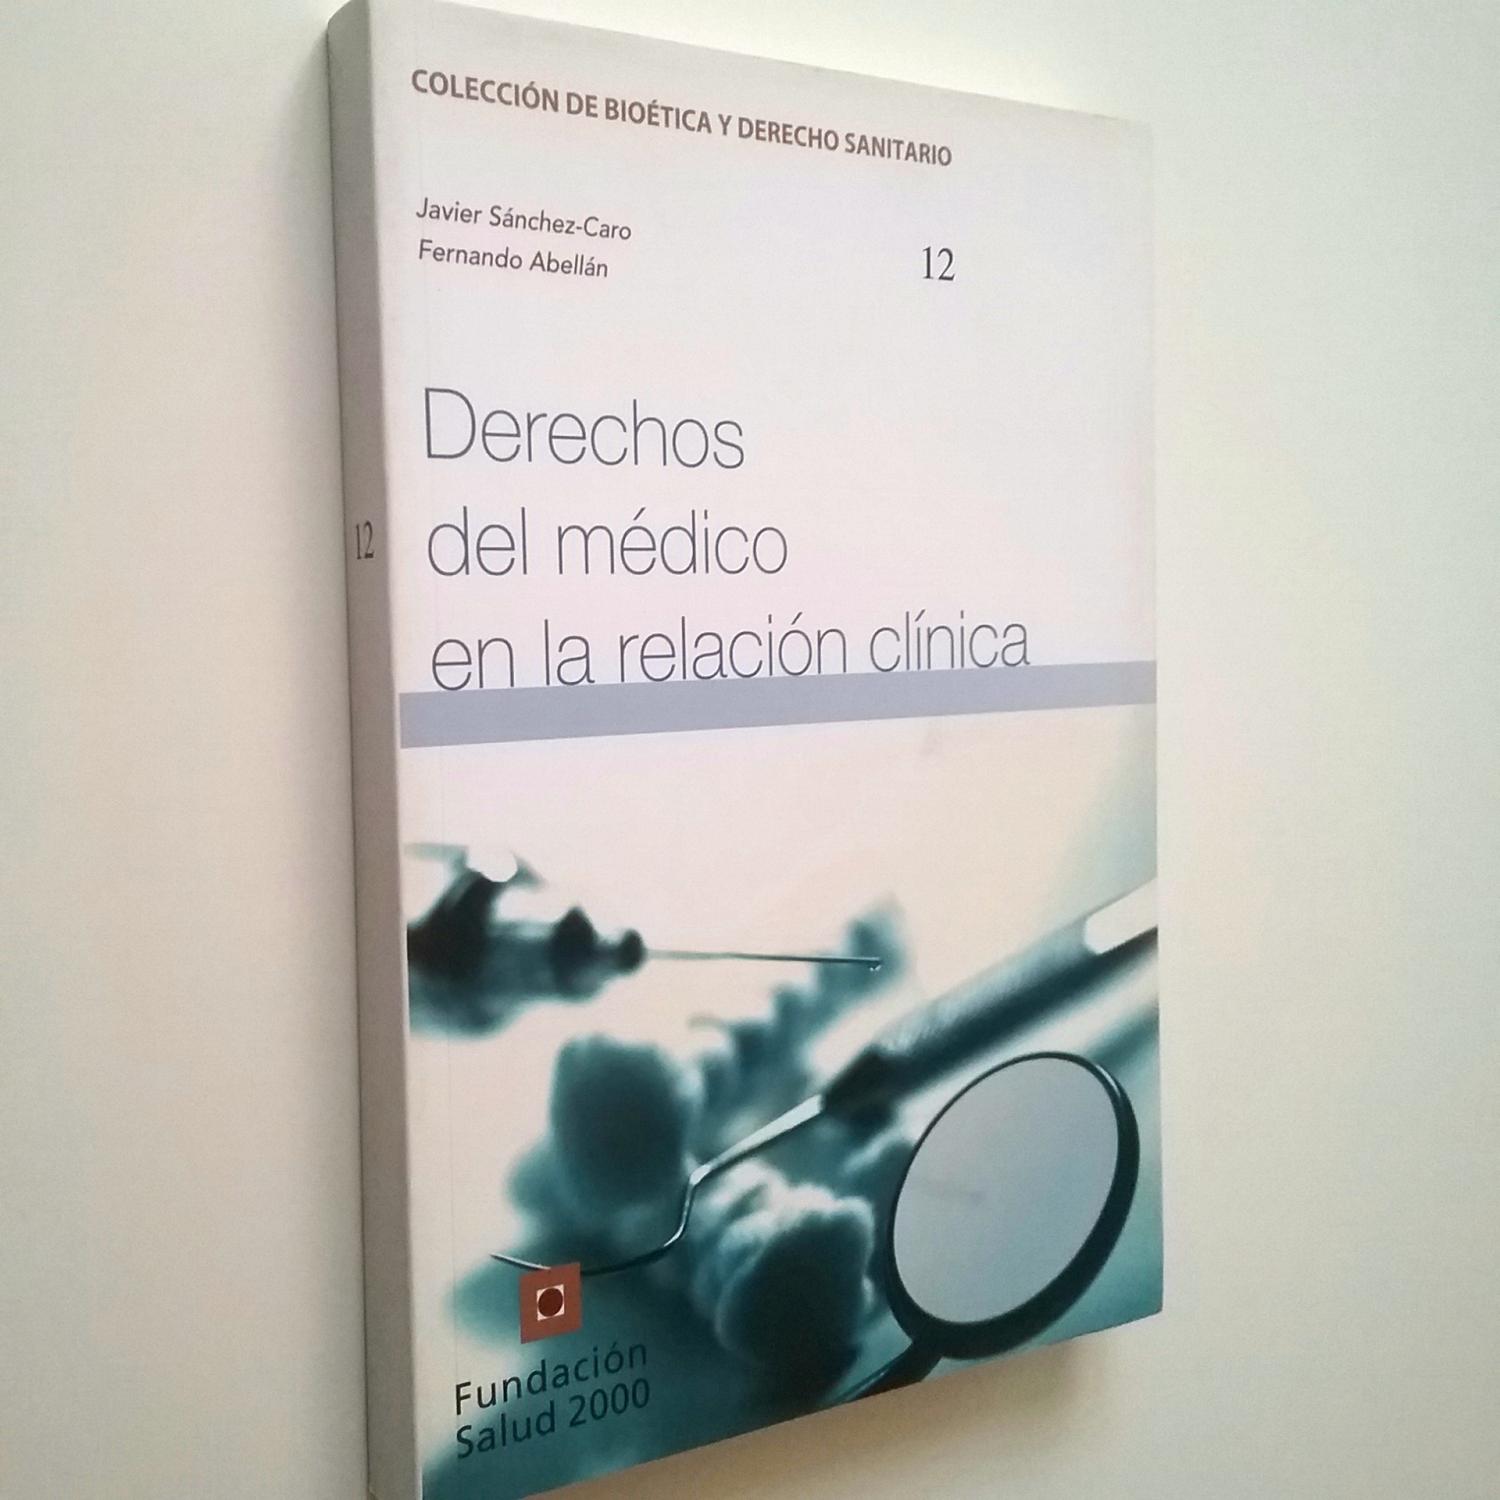 Derechos del médico en la relación clínica - Javier Sánchez-Caro y Fernando Abellán